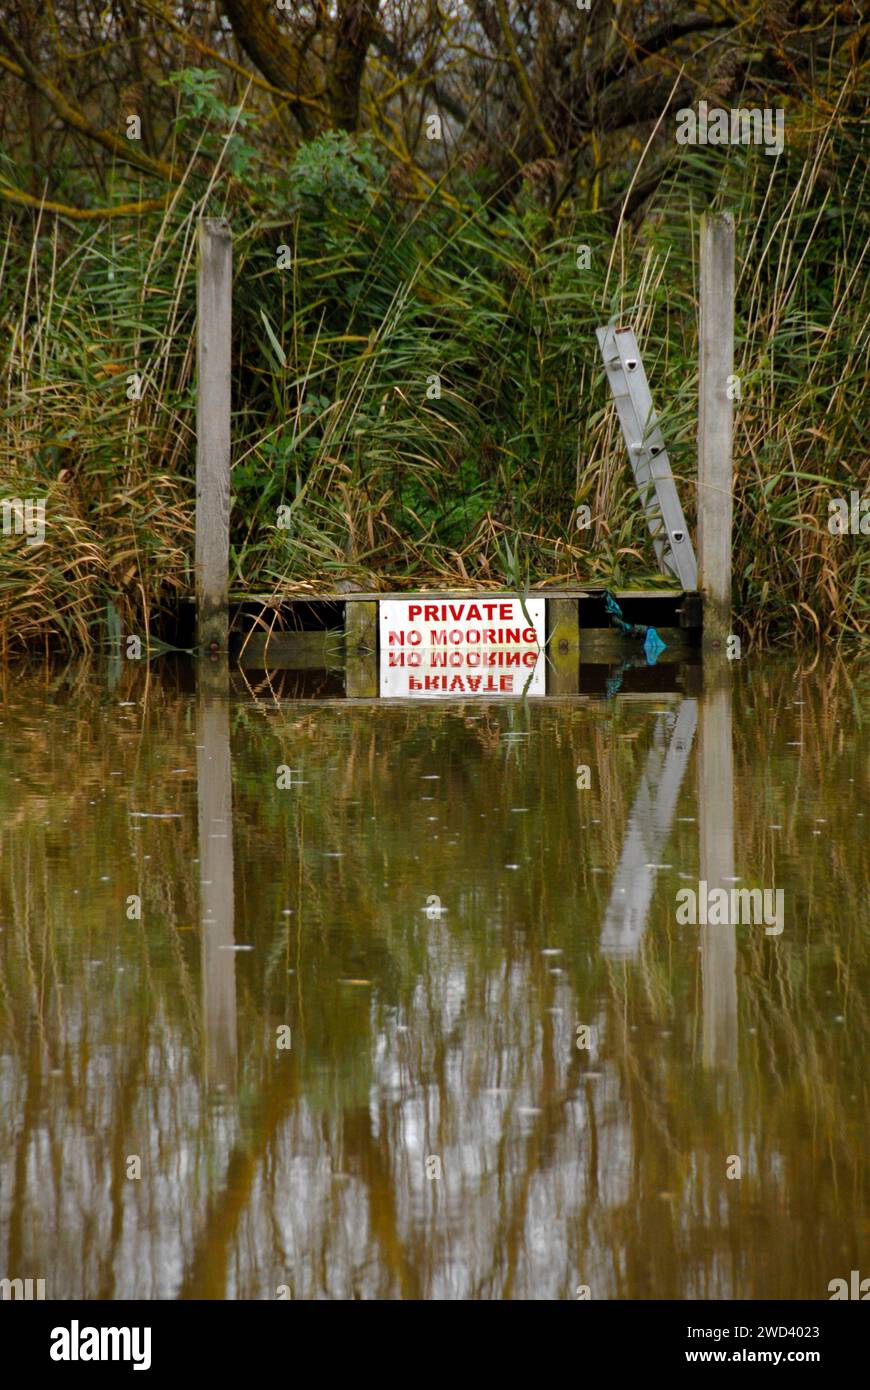 Alto livello del fiume Waveney a Beccles, Suffolk, Inghilterra dopo forti piogge, quasi coprendo il cartello "Private No Mooring" Foto Stock